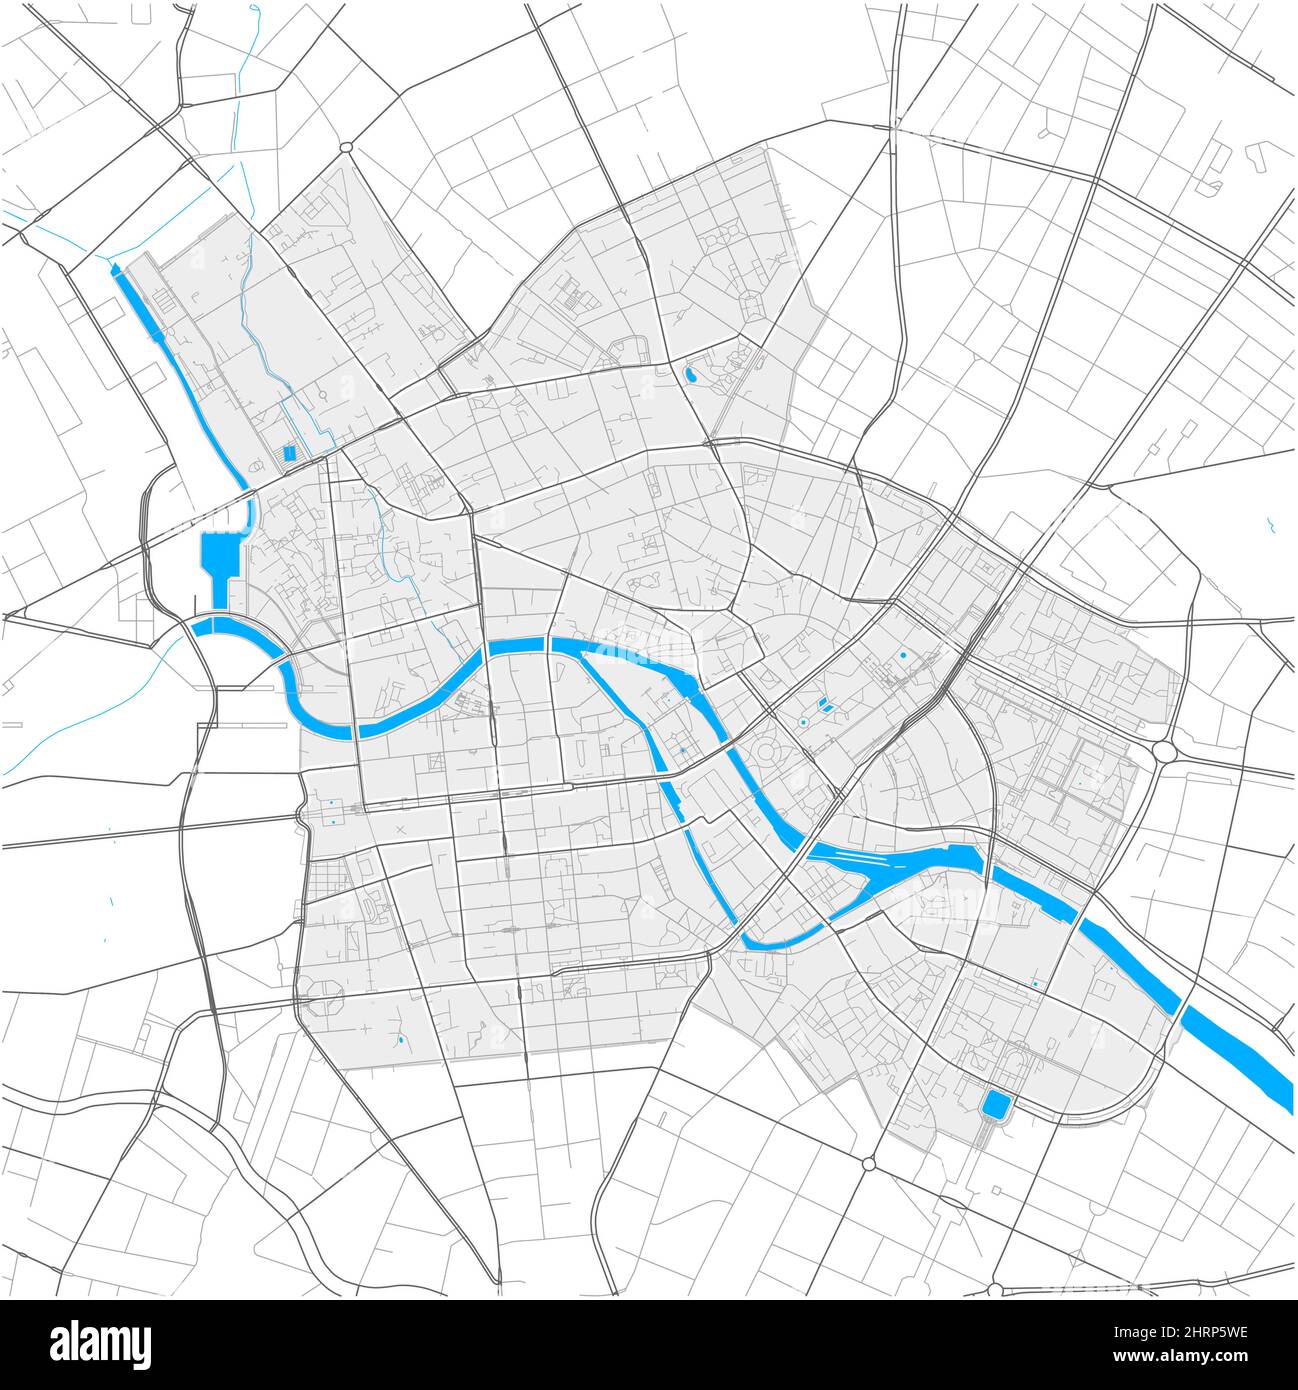 Mitte, Berlin, DEUTSCHLAND, carte vectorielle très détaillée avec limites de la ville et chemins modifiables. Contours blancs pour les routes principales. Beaucoup de chemins plus petits. Bleu SH Illustration de Vecteur